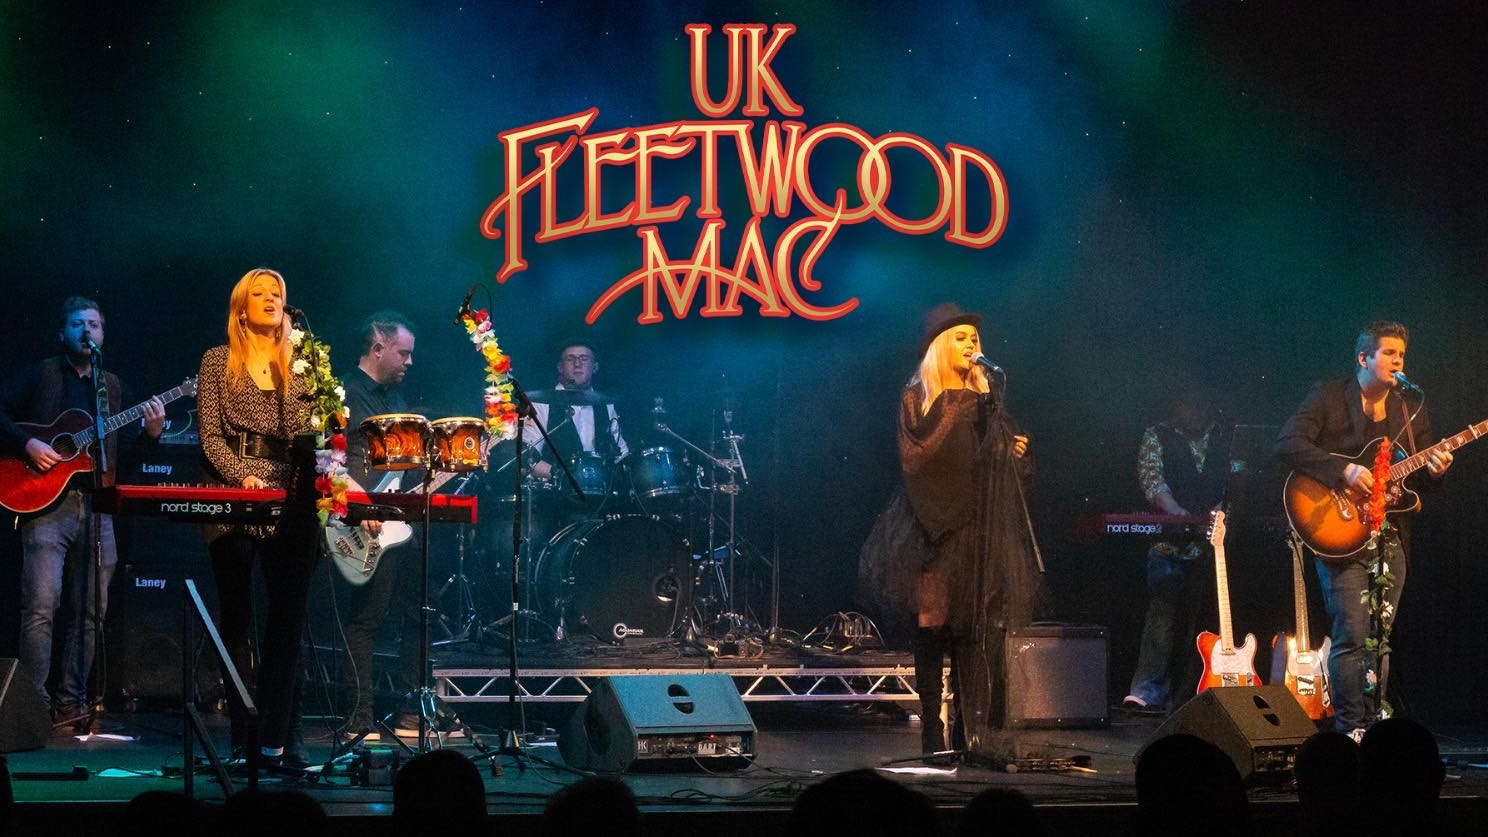 UK Feetwood Mac